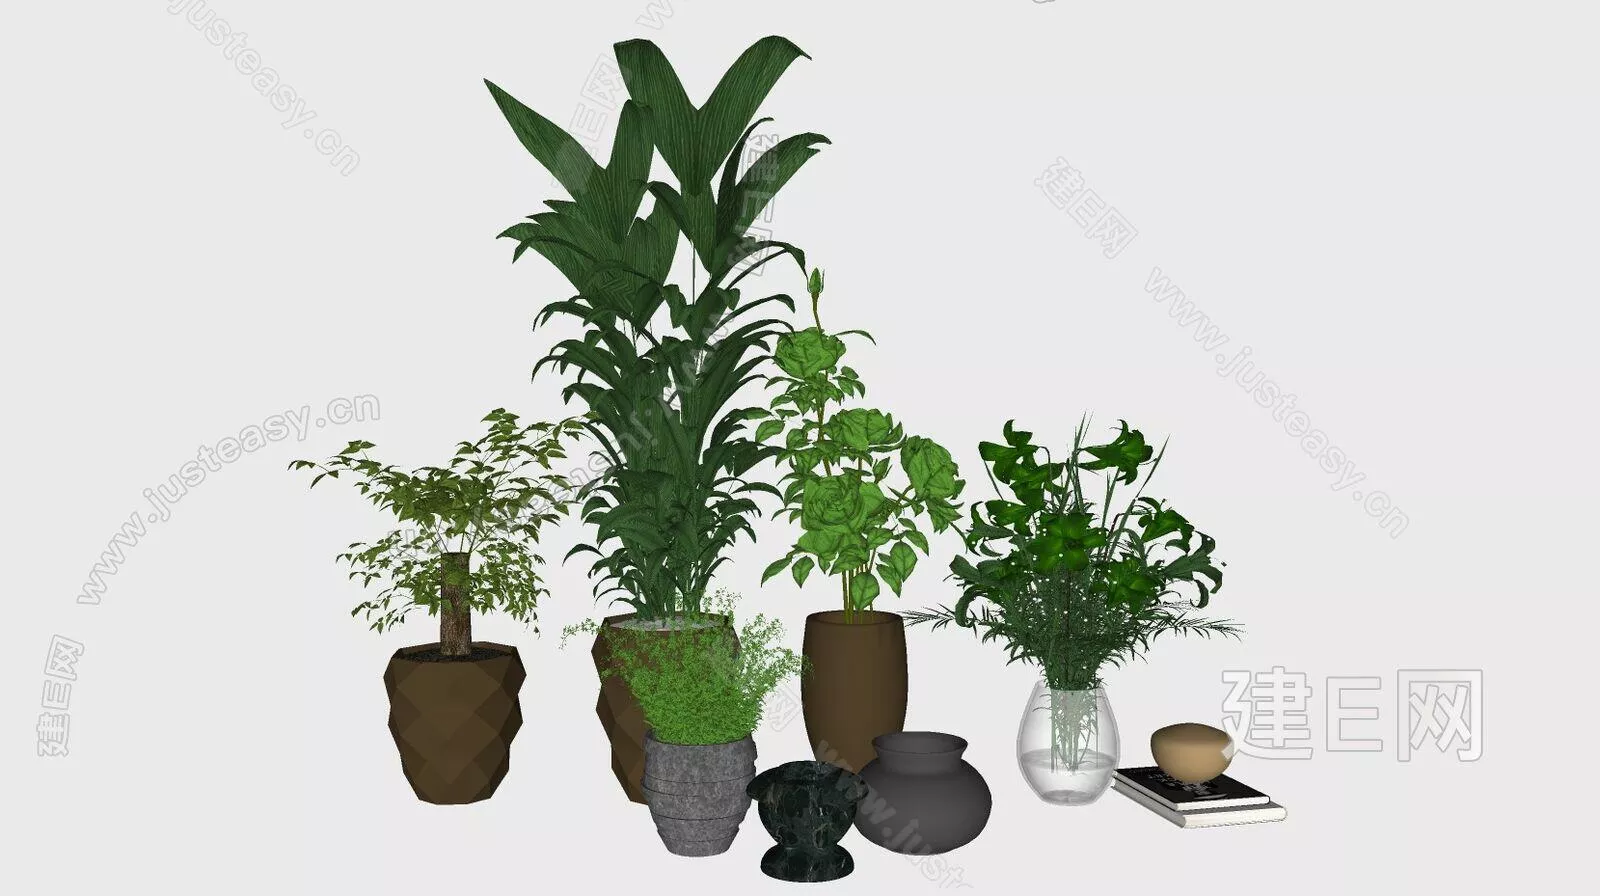 MODERN POTTED PLANT - SKETCHUP 3D MODEL - ENSCAPE - 113197441